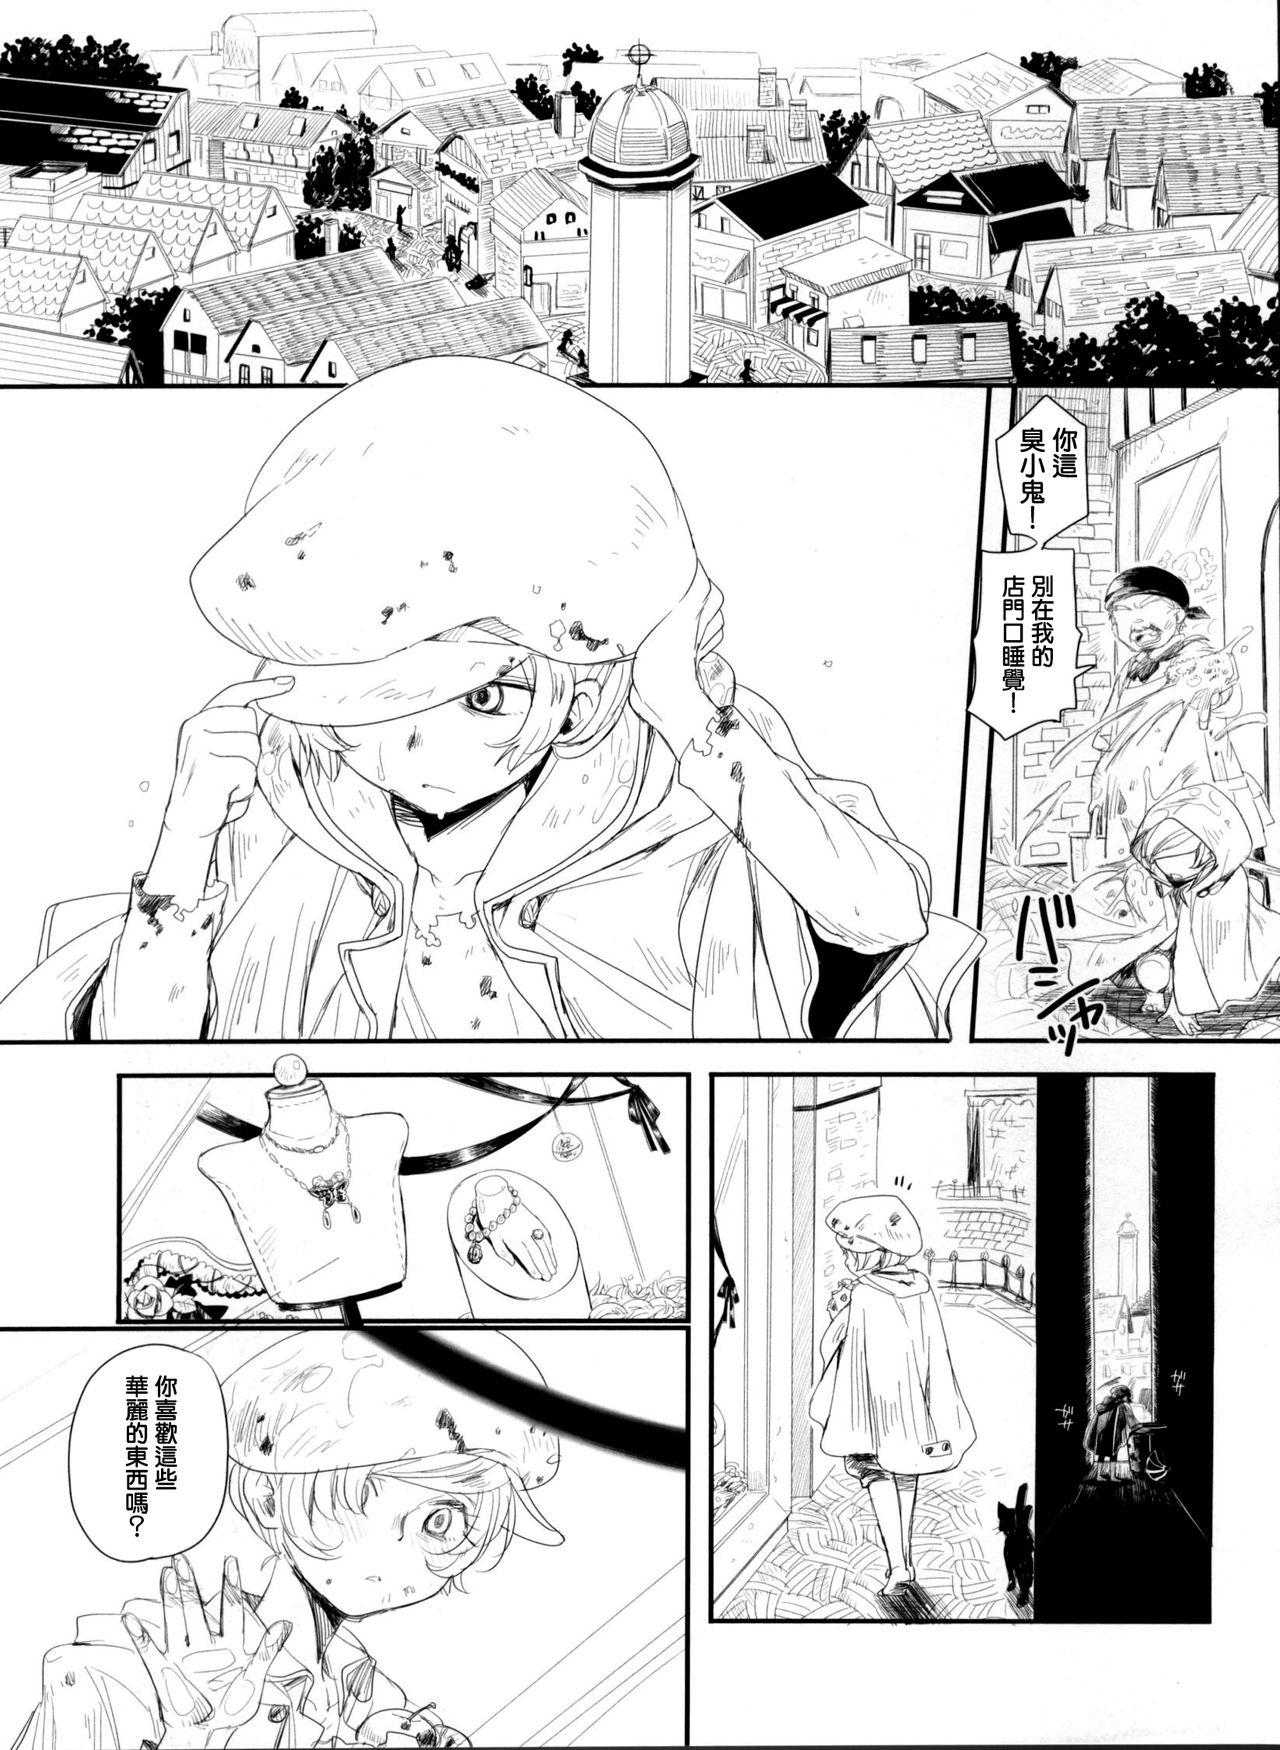 Jacking Chiru Hana, Saku Hana. - Lupin iii Huge - Page 4